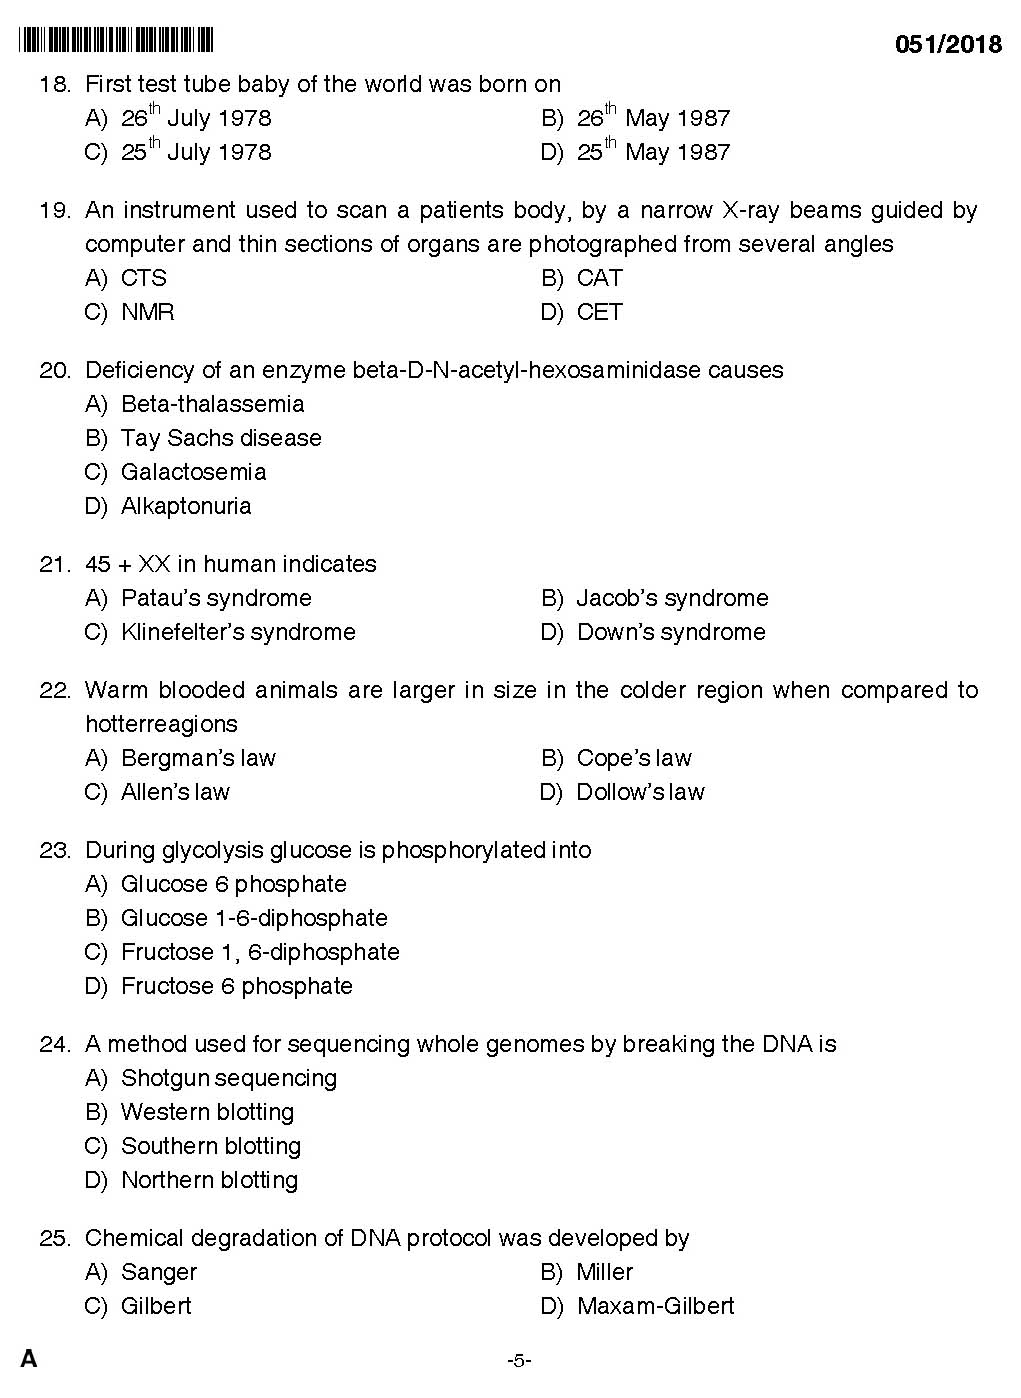 KPSC Higher Secondary School Teacher Exam Question 0512018 3